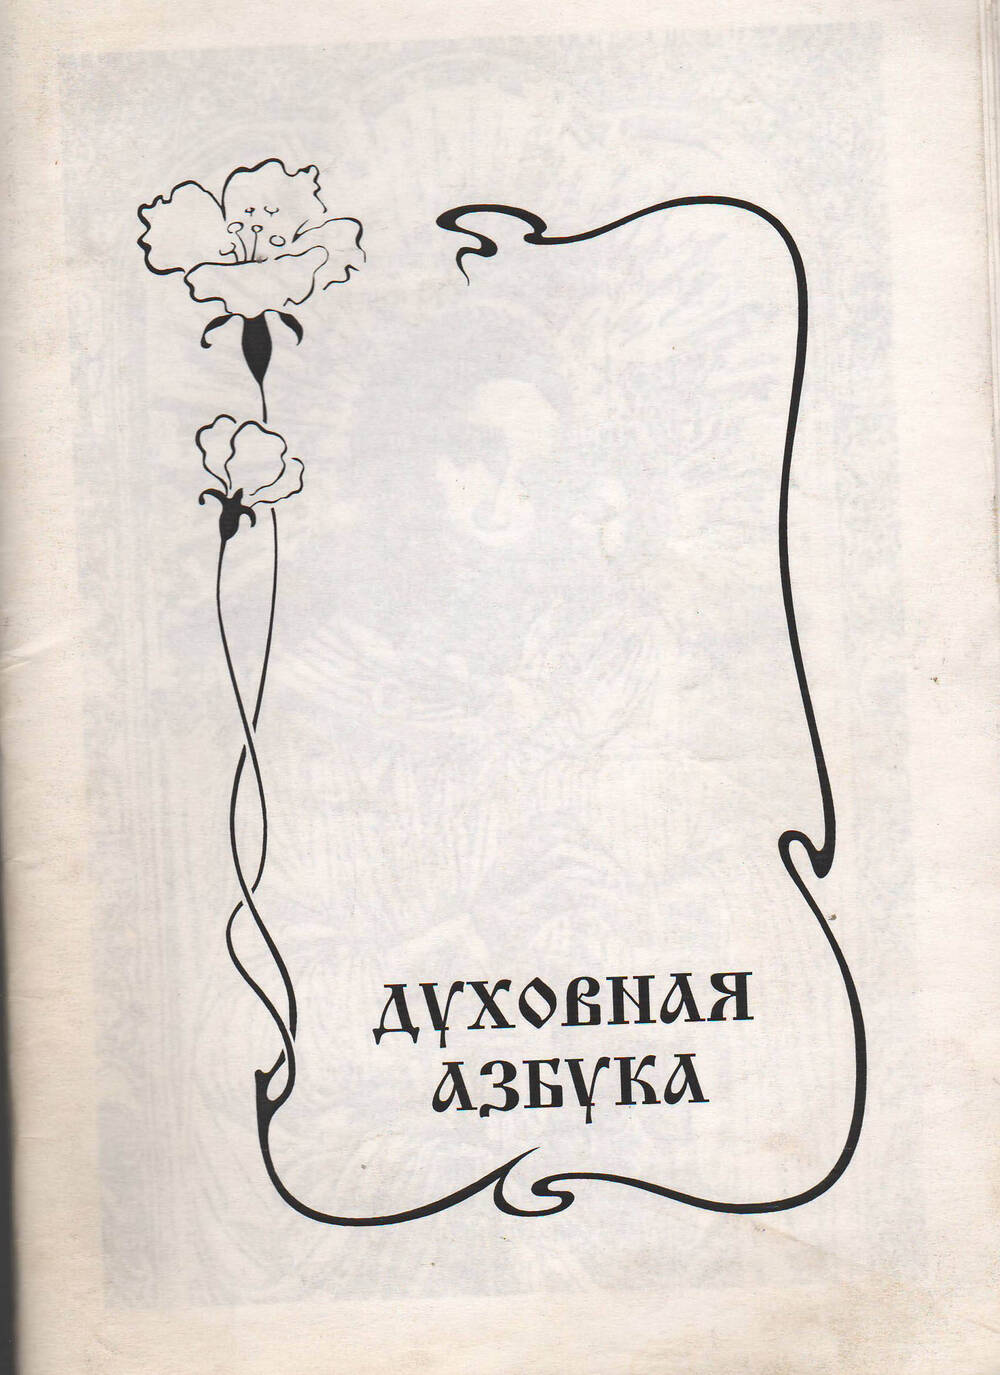 Брошюра Духовная азбука. Издательство Агат Санкт-Петербург. 1996 год.